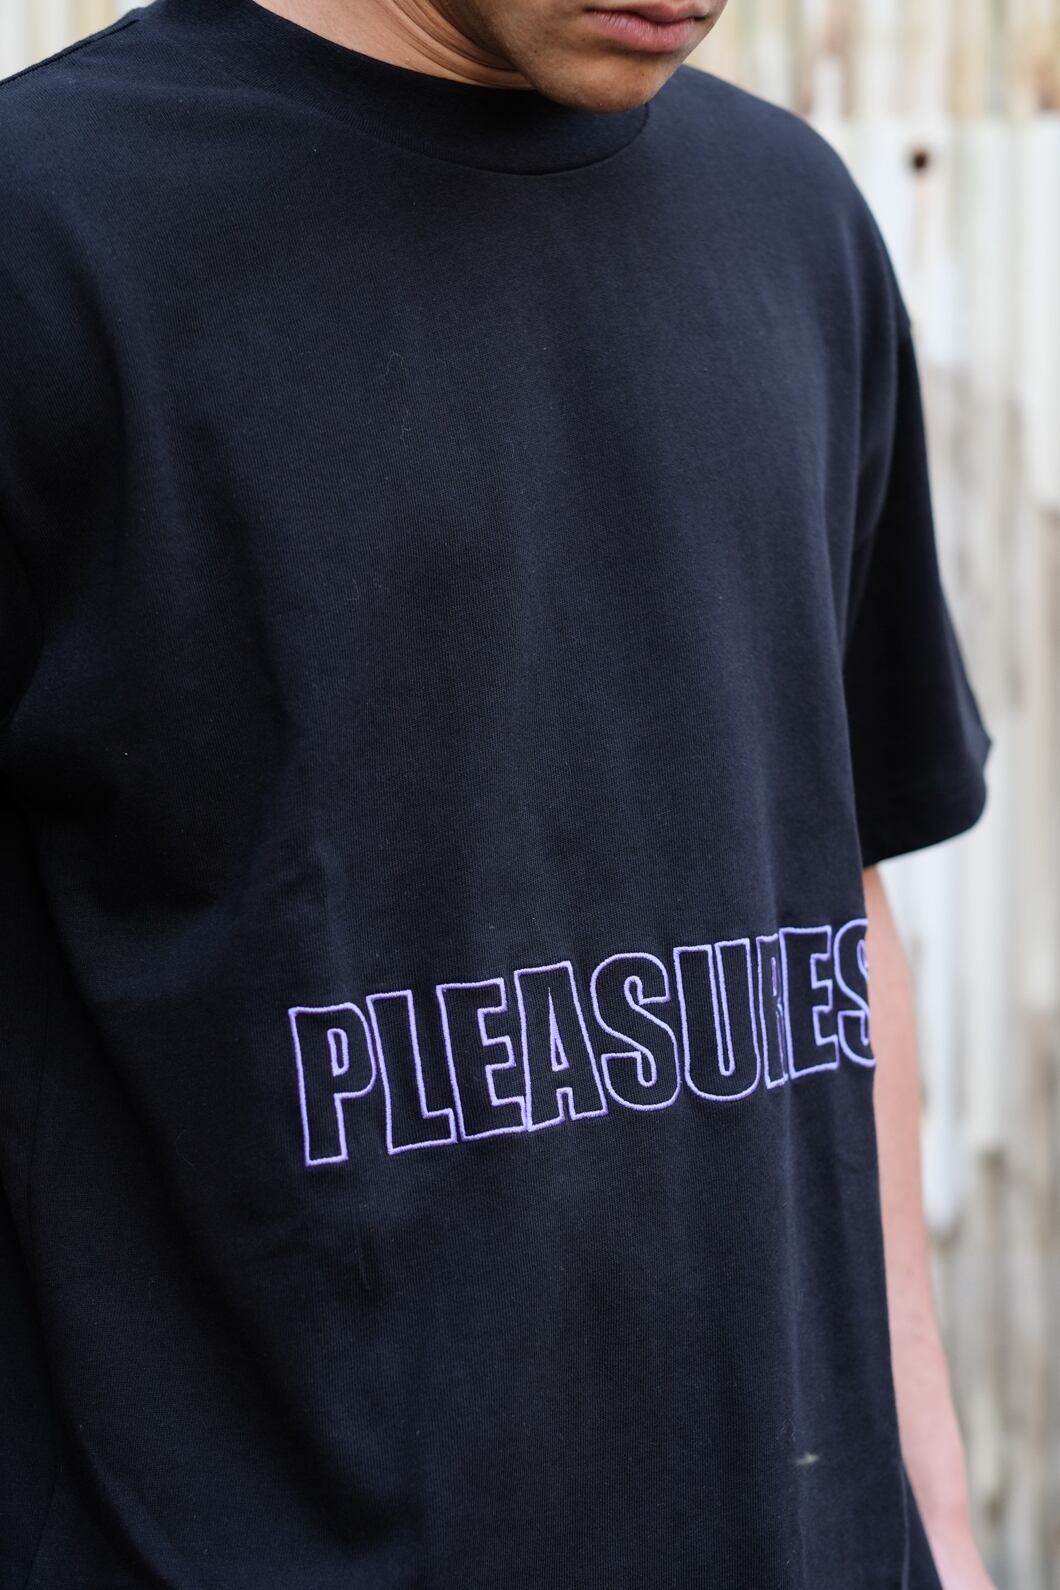 pleasures Tシャツ